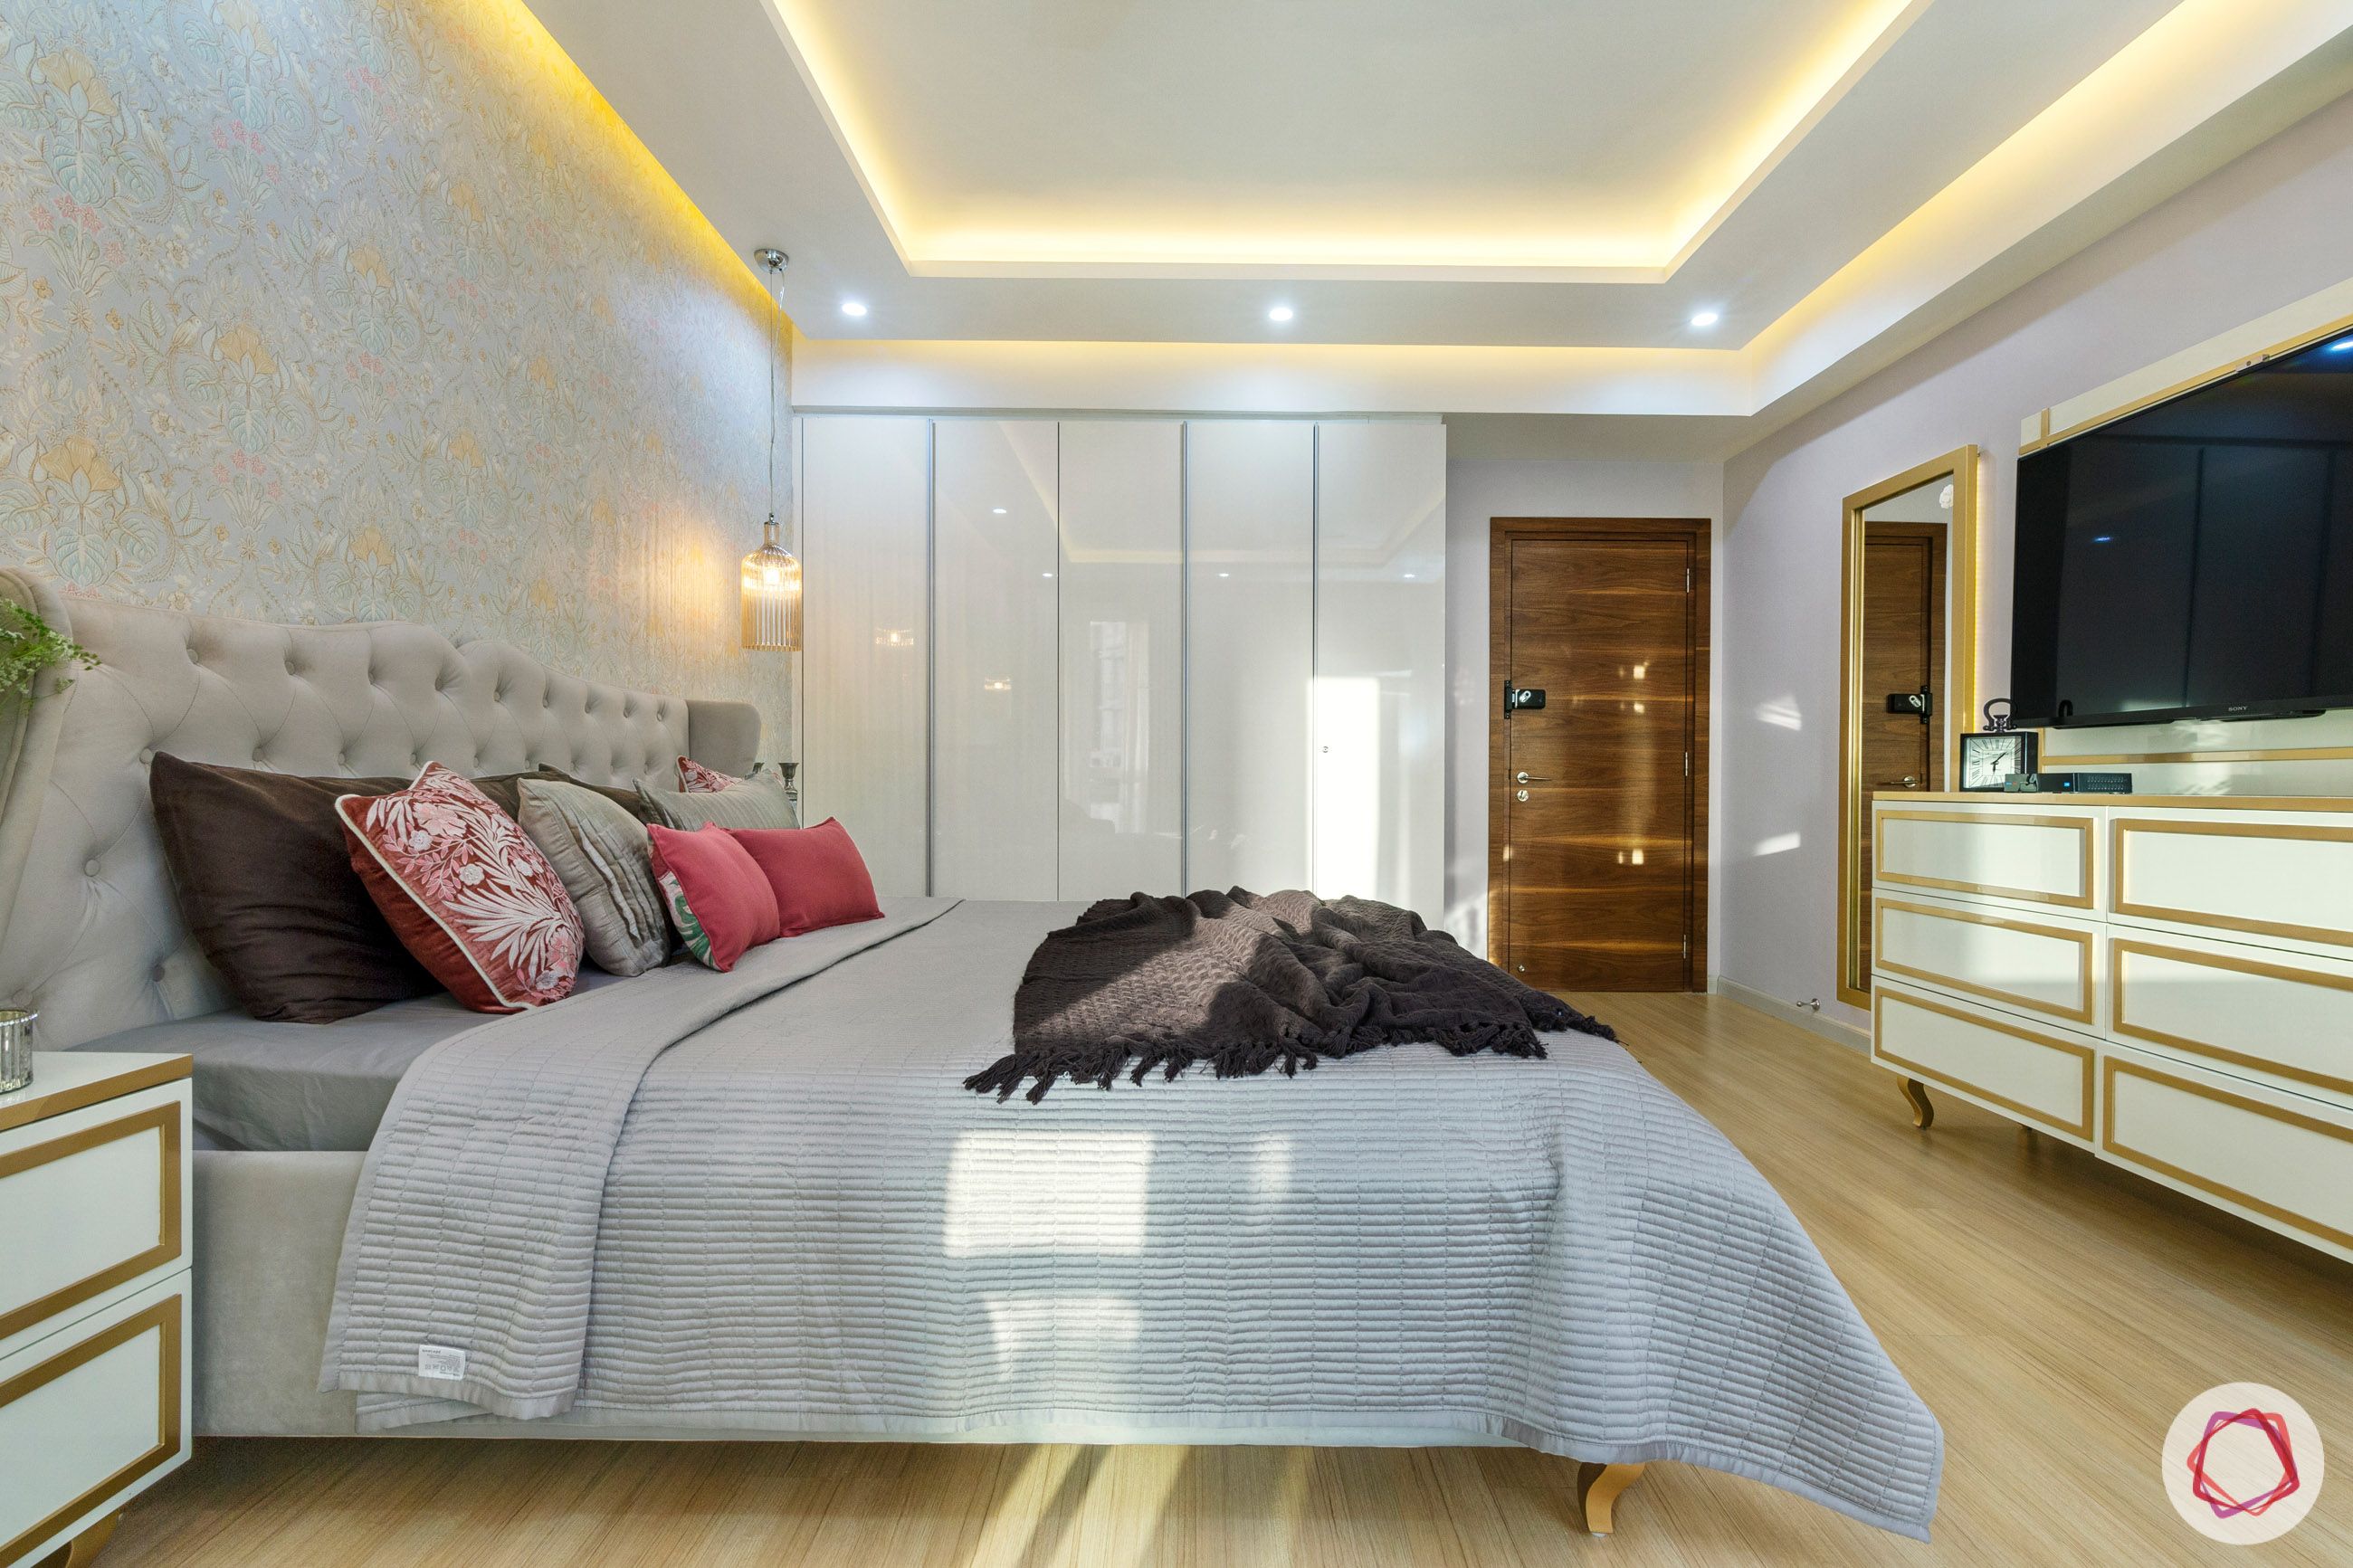 dlf park place-master bedroom-headboard-wallpaper-pendant lights-TV unit-wardrobe